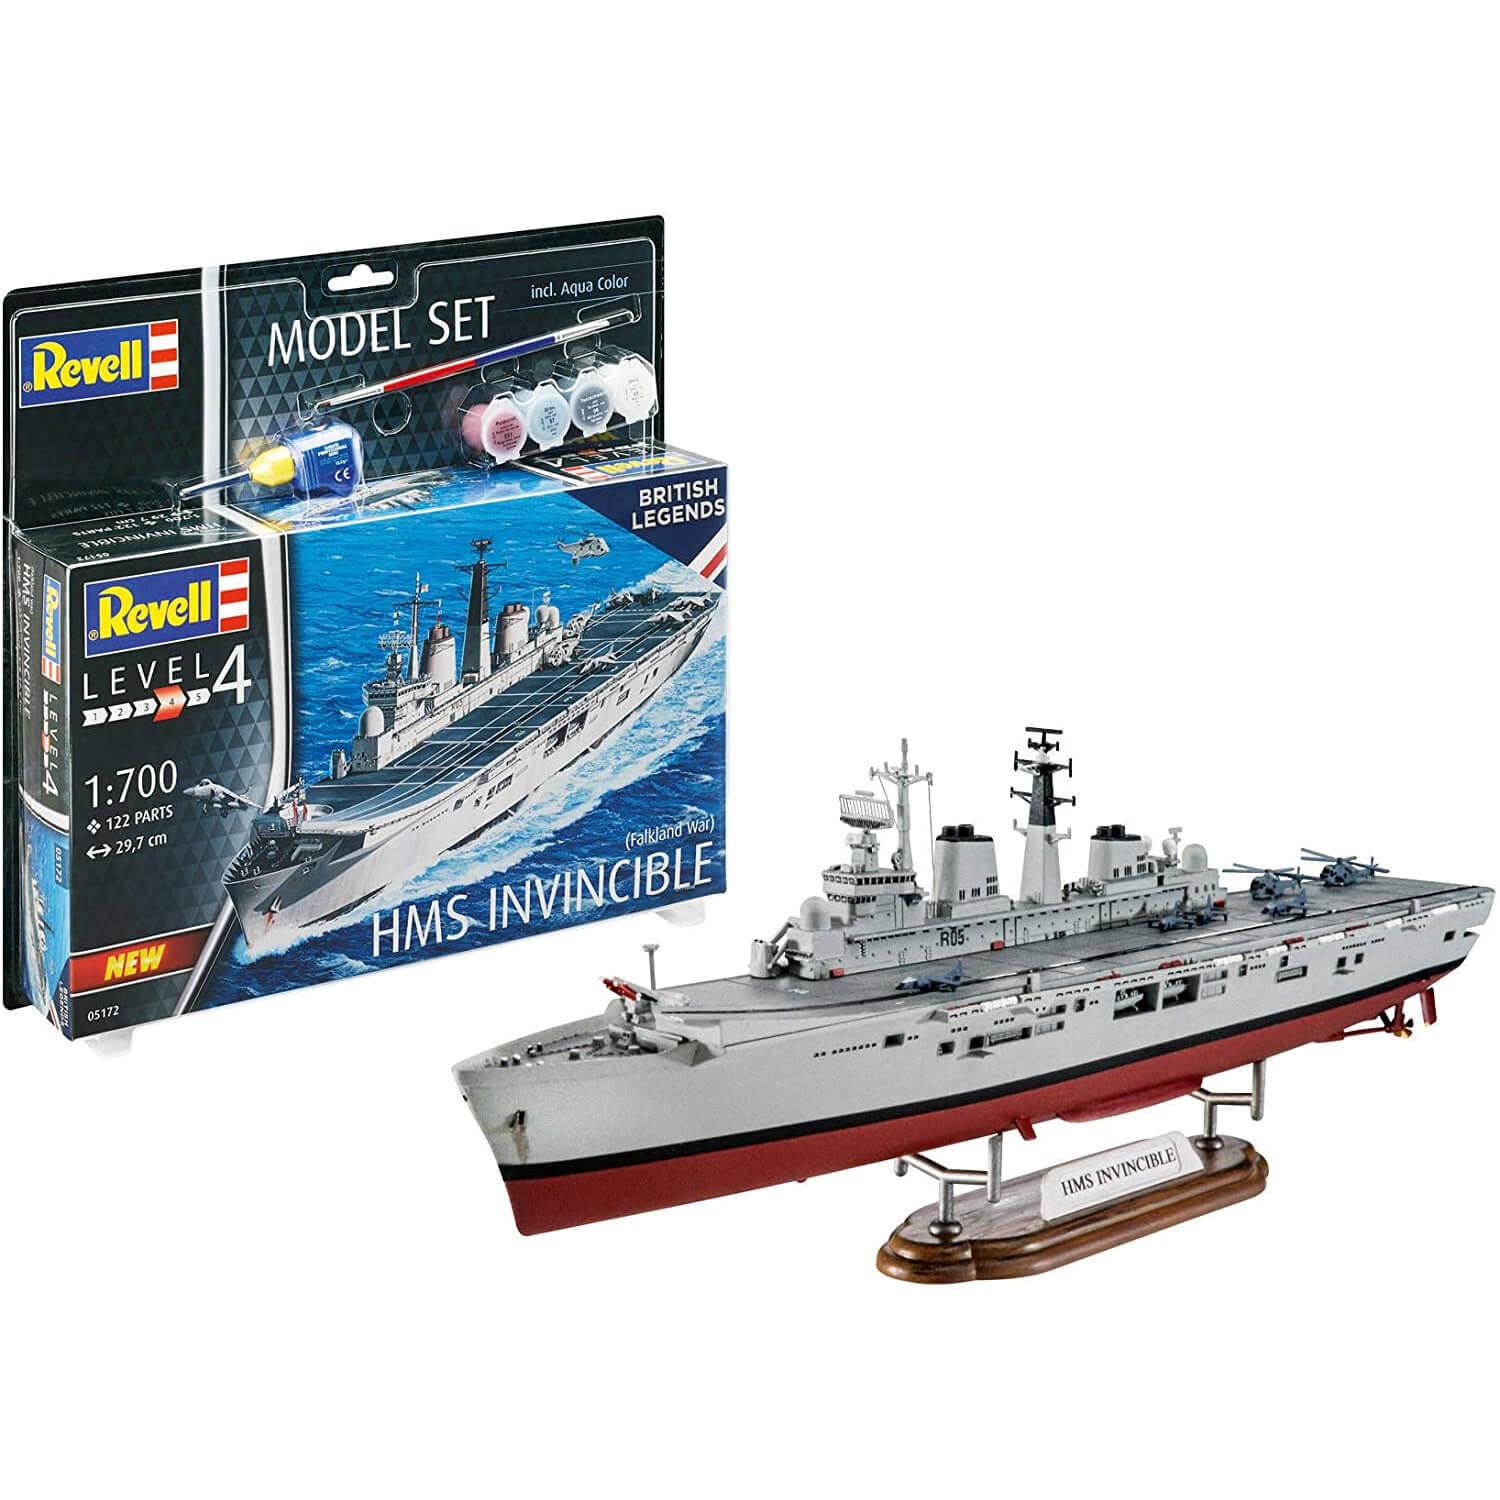 Maquette bateau : Model Set : British Legends : HMS Invincible (Falkland War)